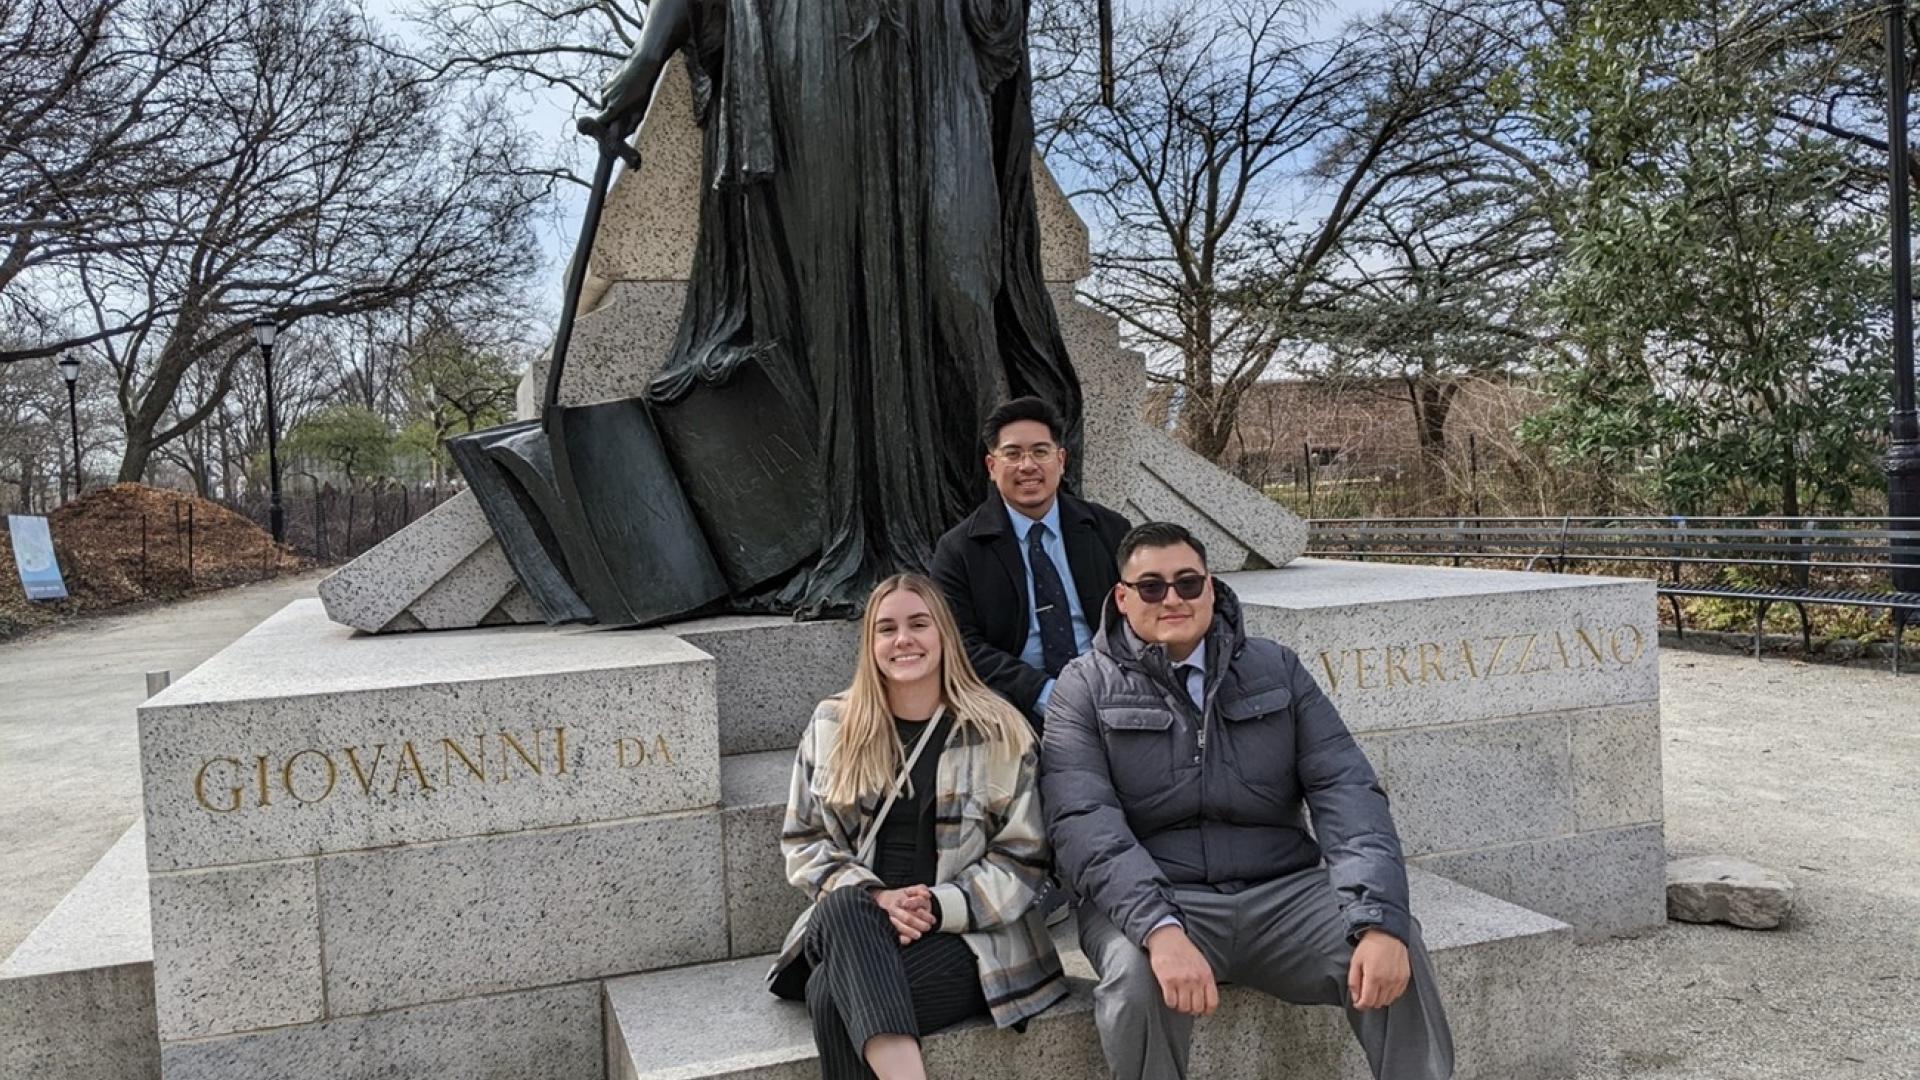 Picture text: “BIG Kids in front of the Giovanni da Verrazzano Statue in Battery Park, New York”